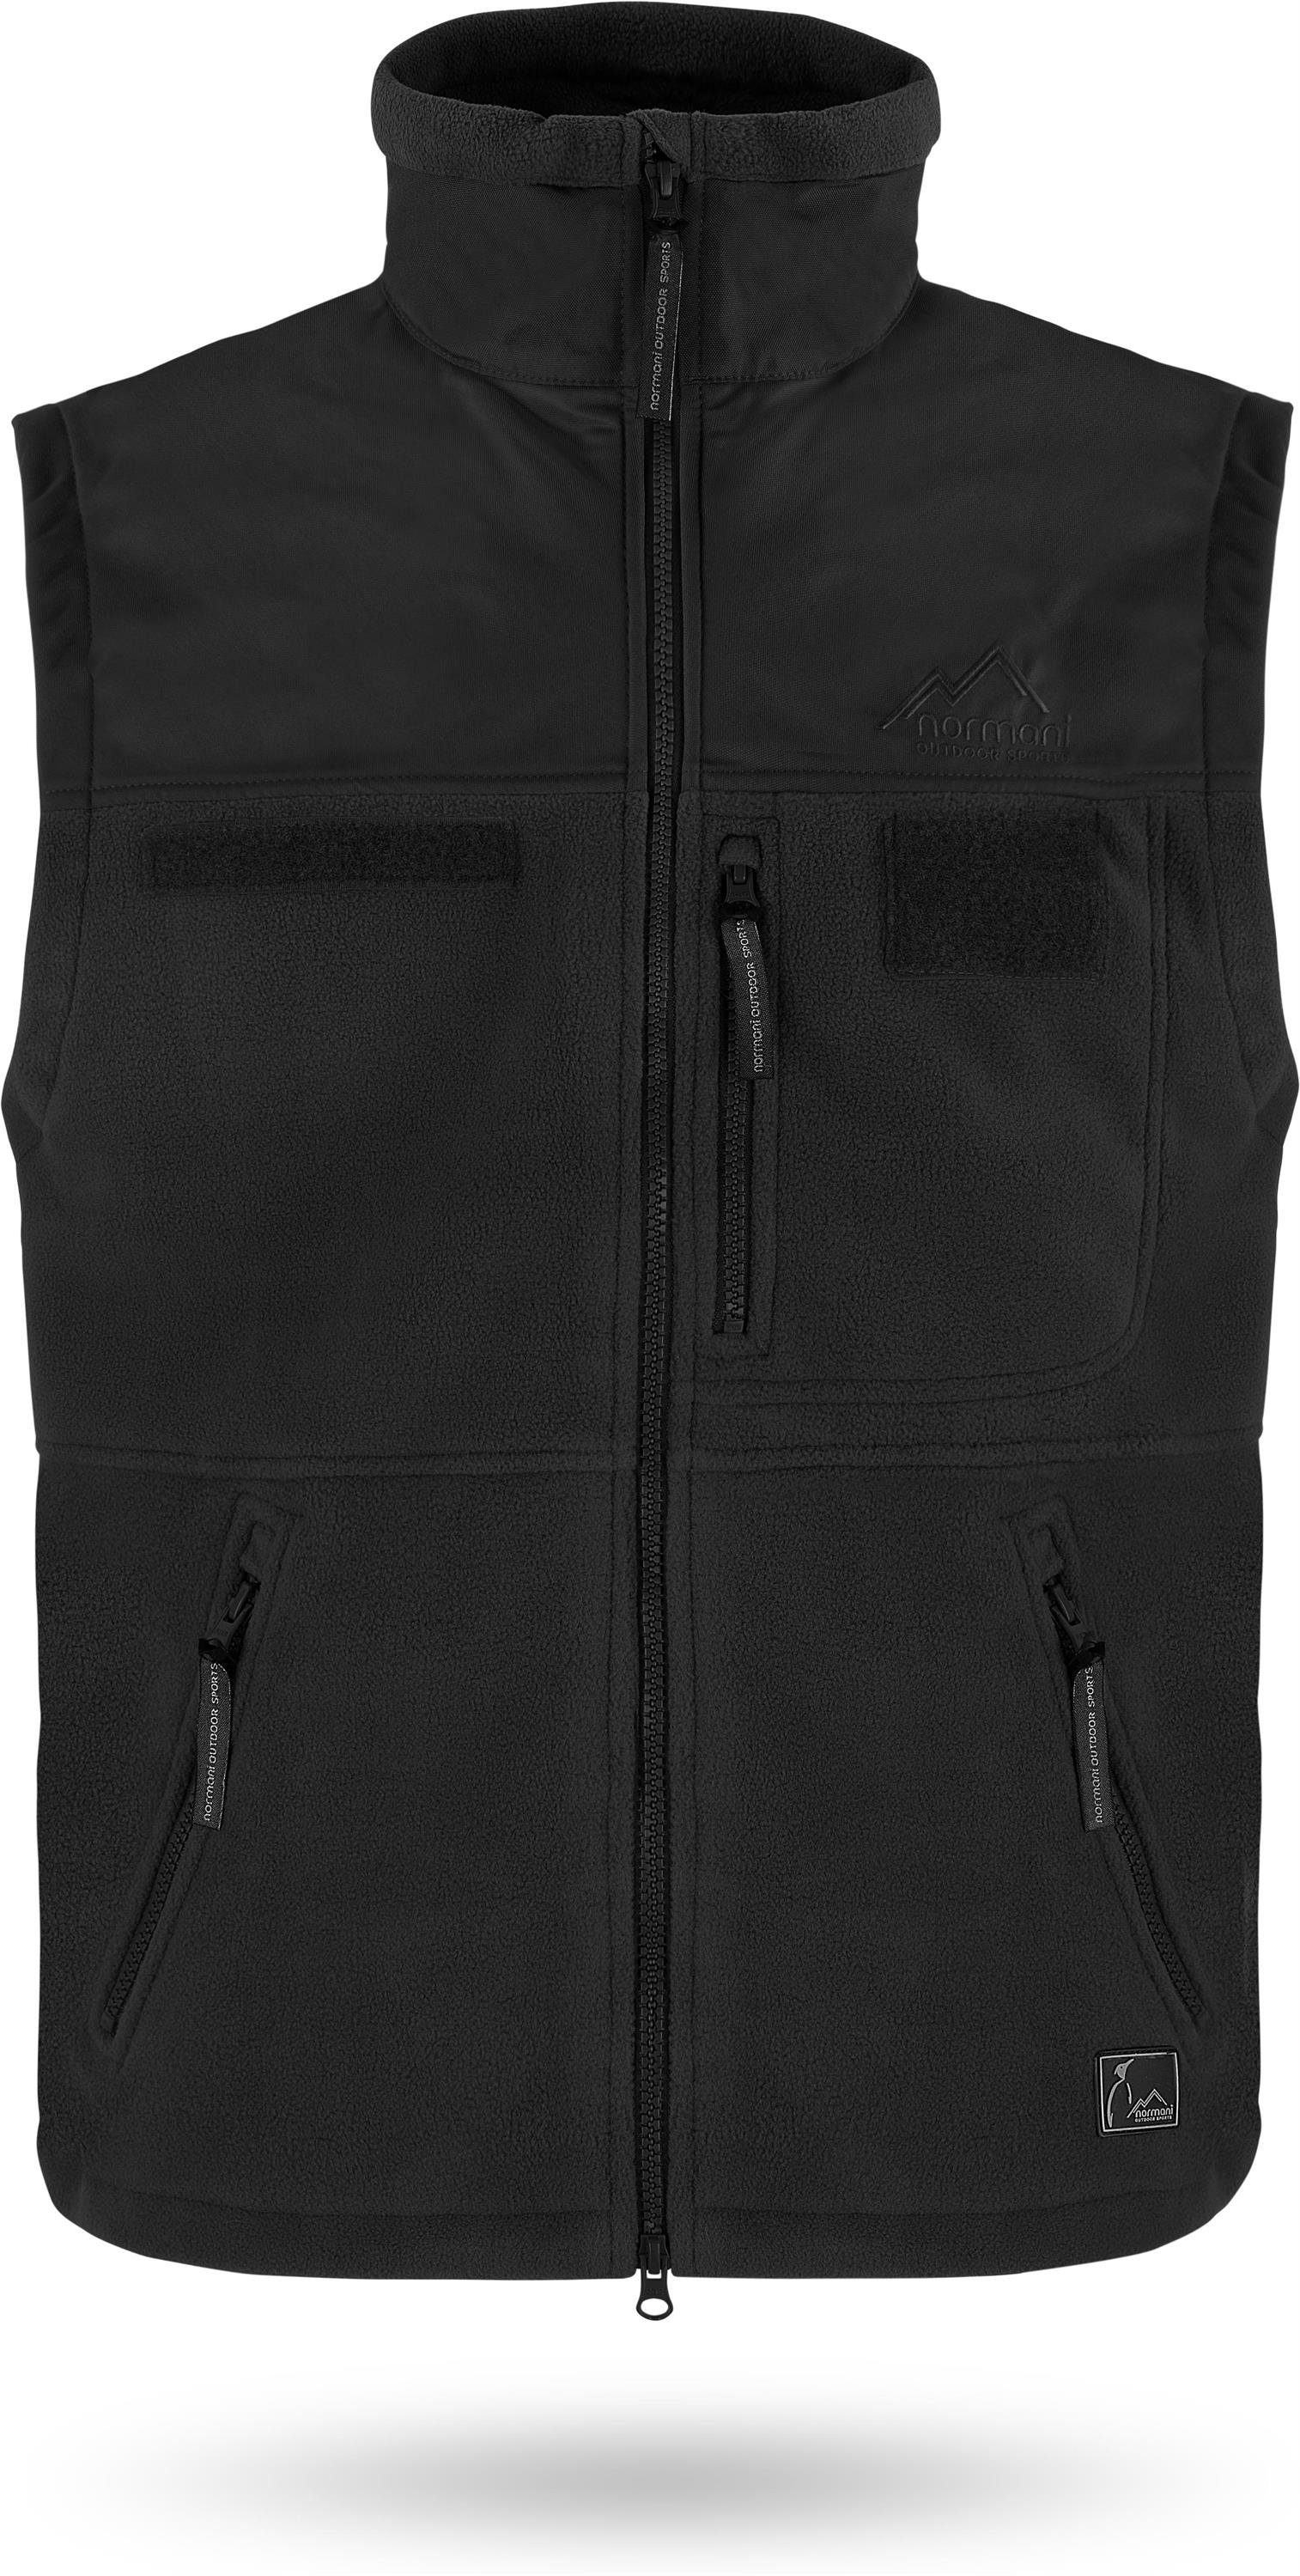 Vest Outdoorweste mit Übergangsweste Schwarz Tactical Reißverschlusstaschen Patchflächen BDU Winterweste normani Jagdweste mit Mevik Fleeceweste Fleeceweste